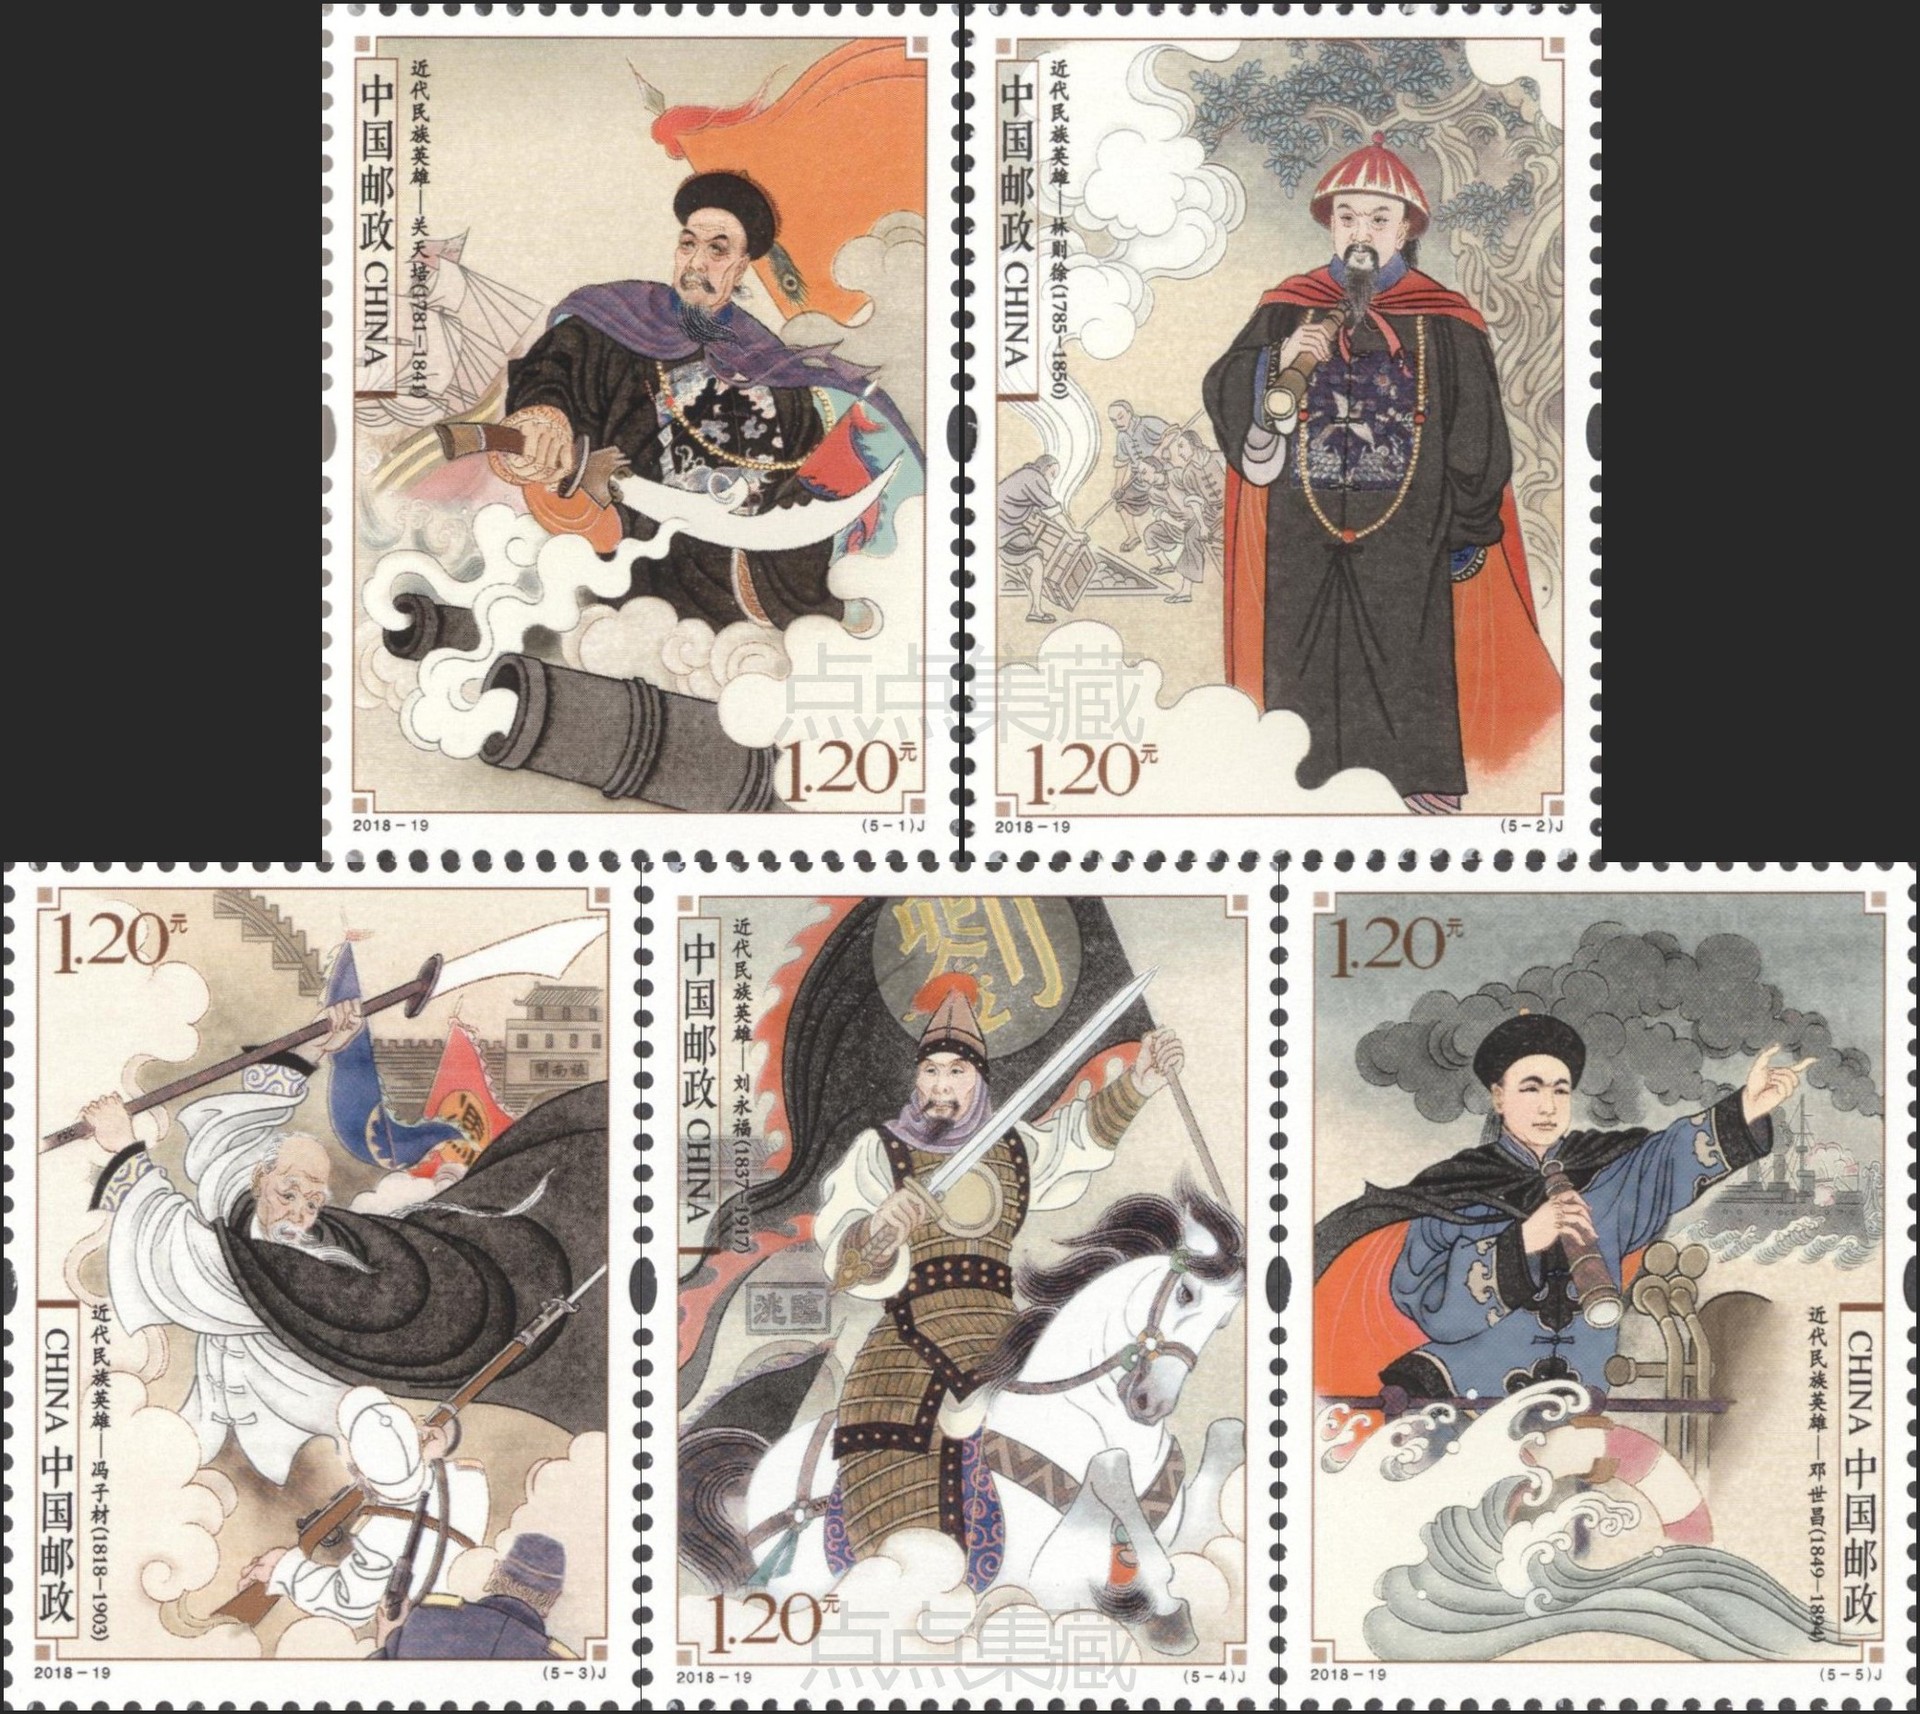 2018-19《近代民族英雄》邮票套票1.2元寄信邮票